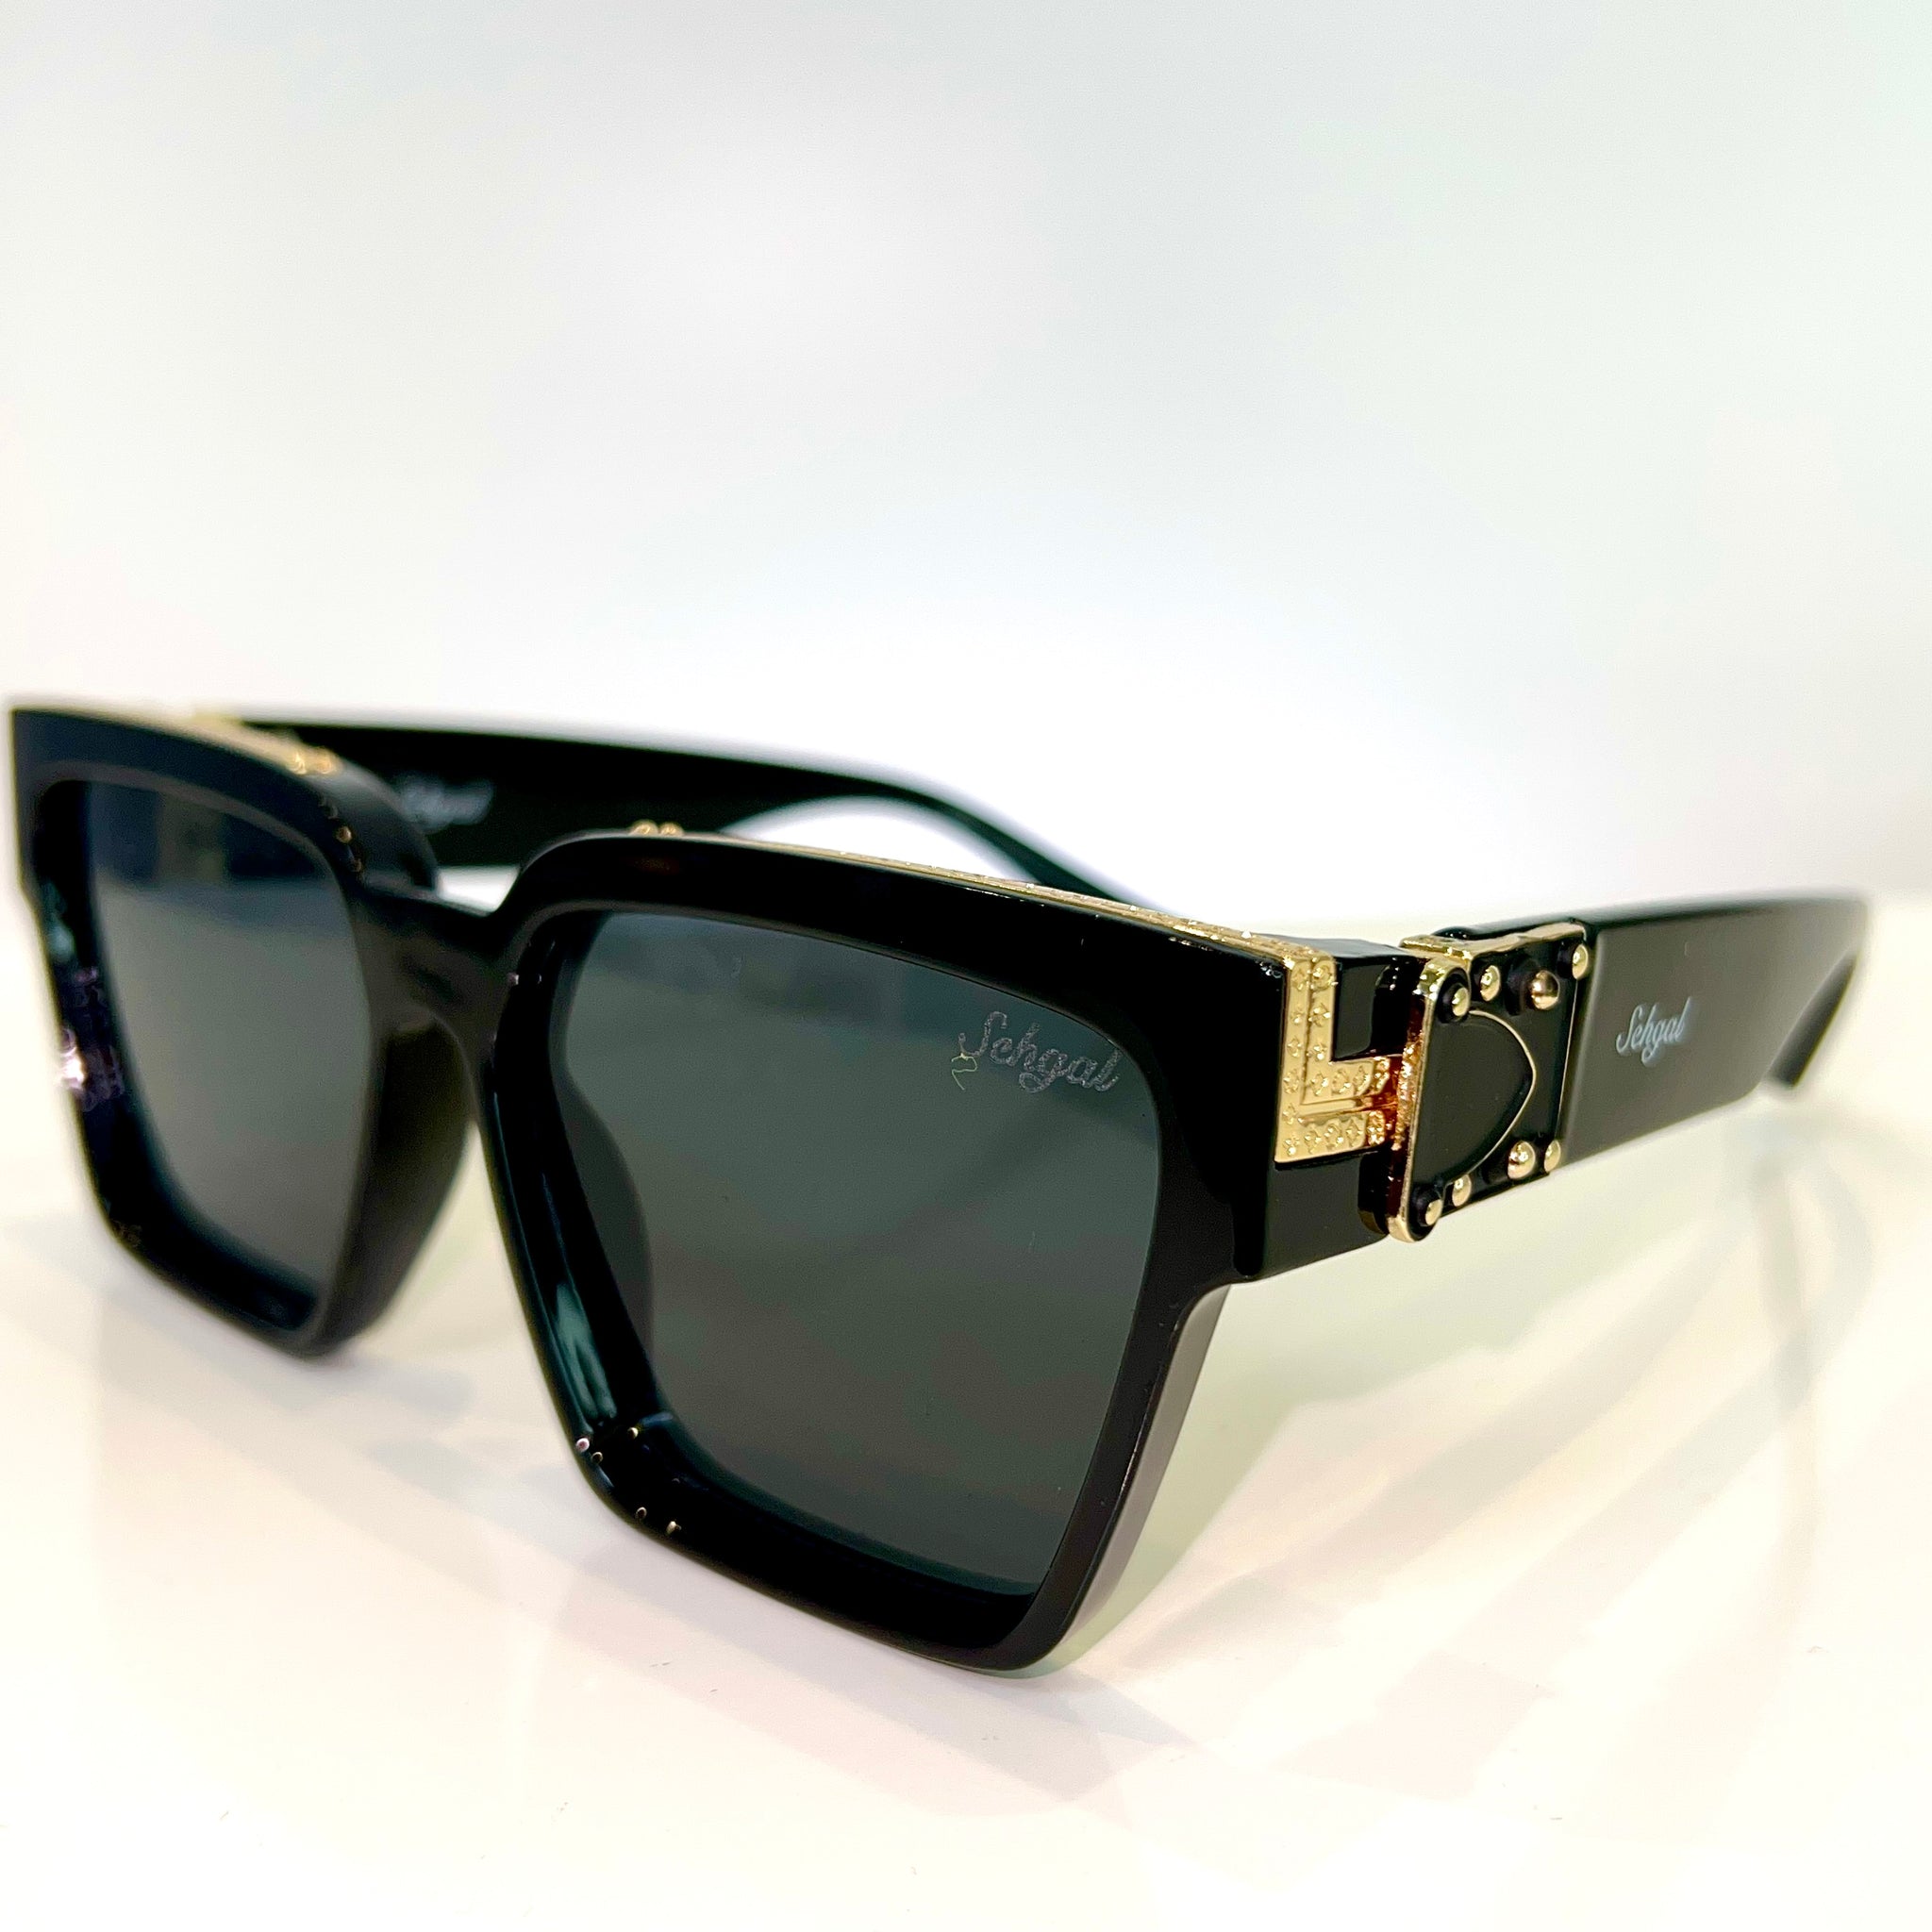 Majesty Glasses - Shiny black